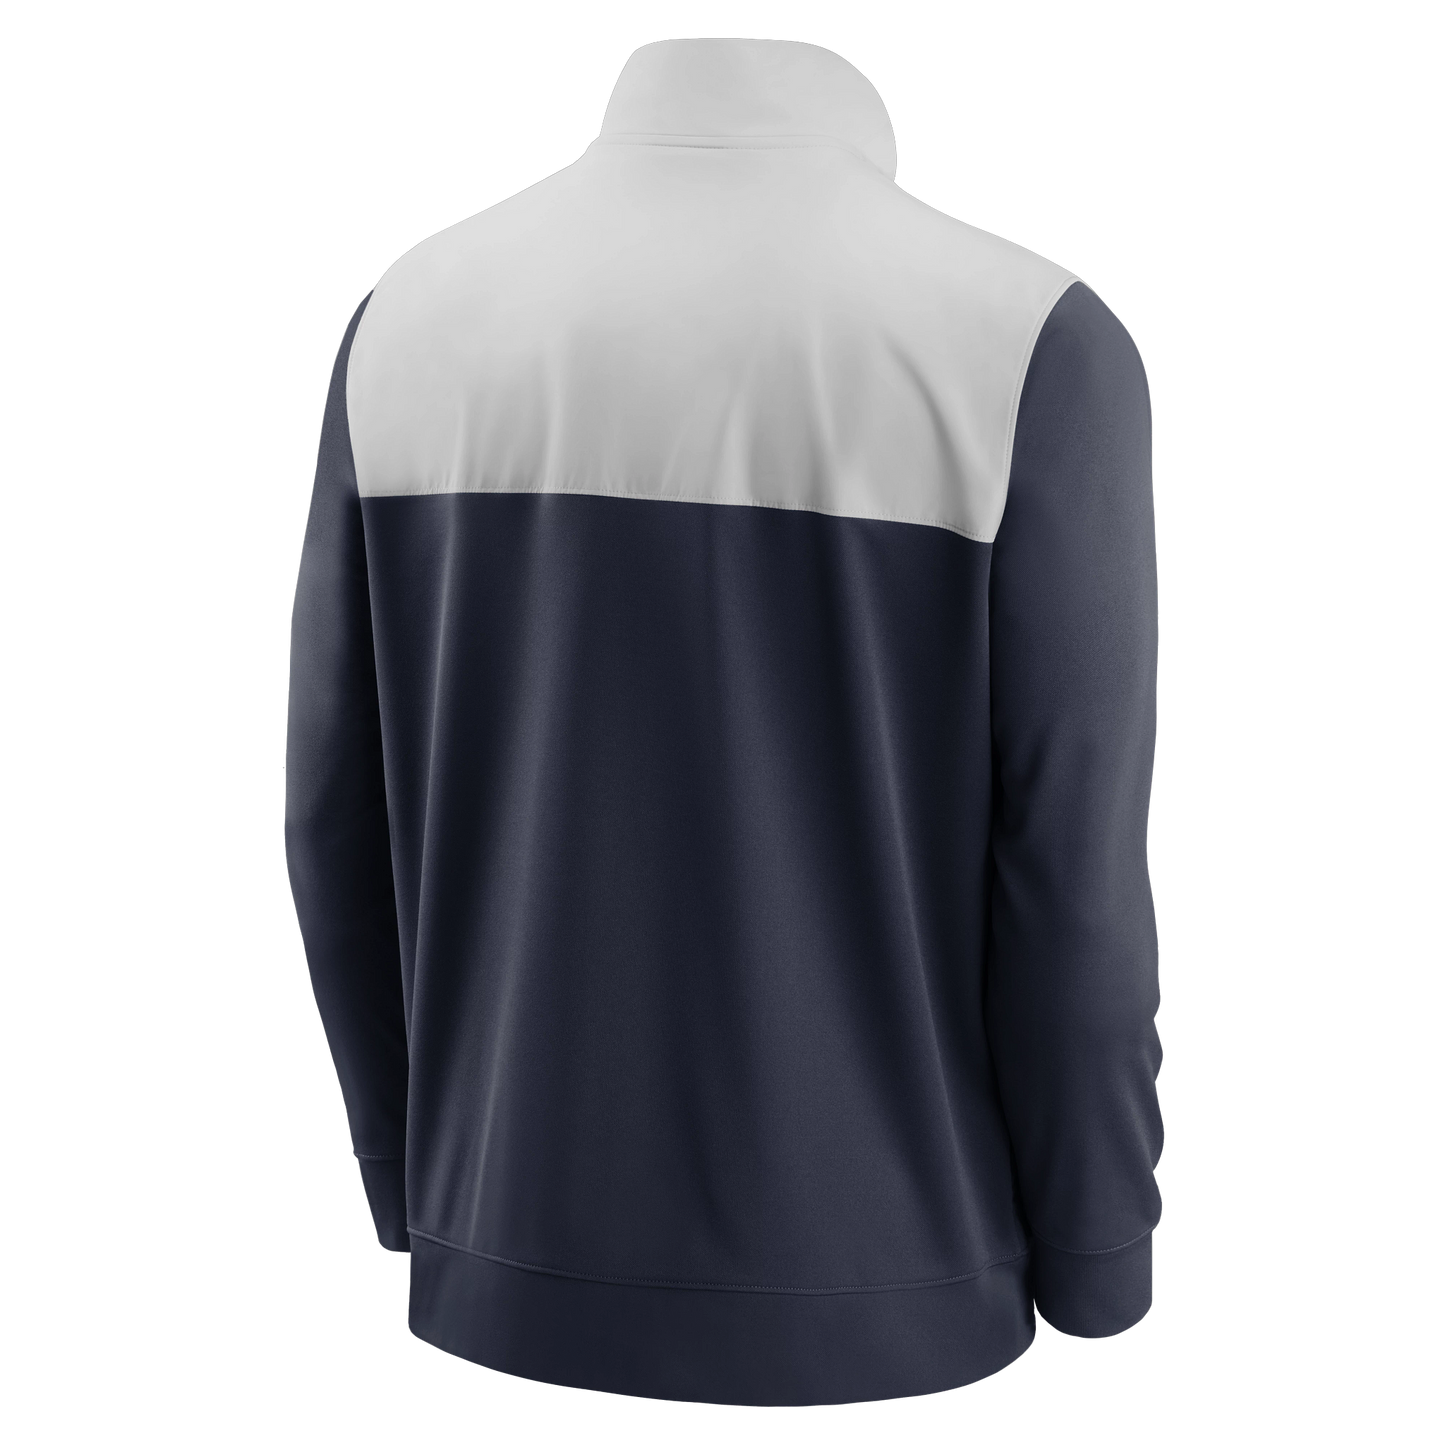 Men's Chicago Bears Nike Navy/Gray Full Zip Logo Jacket